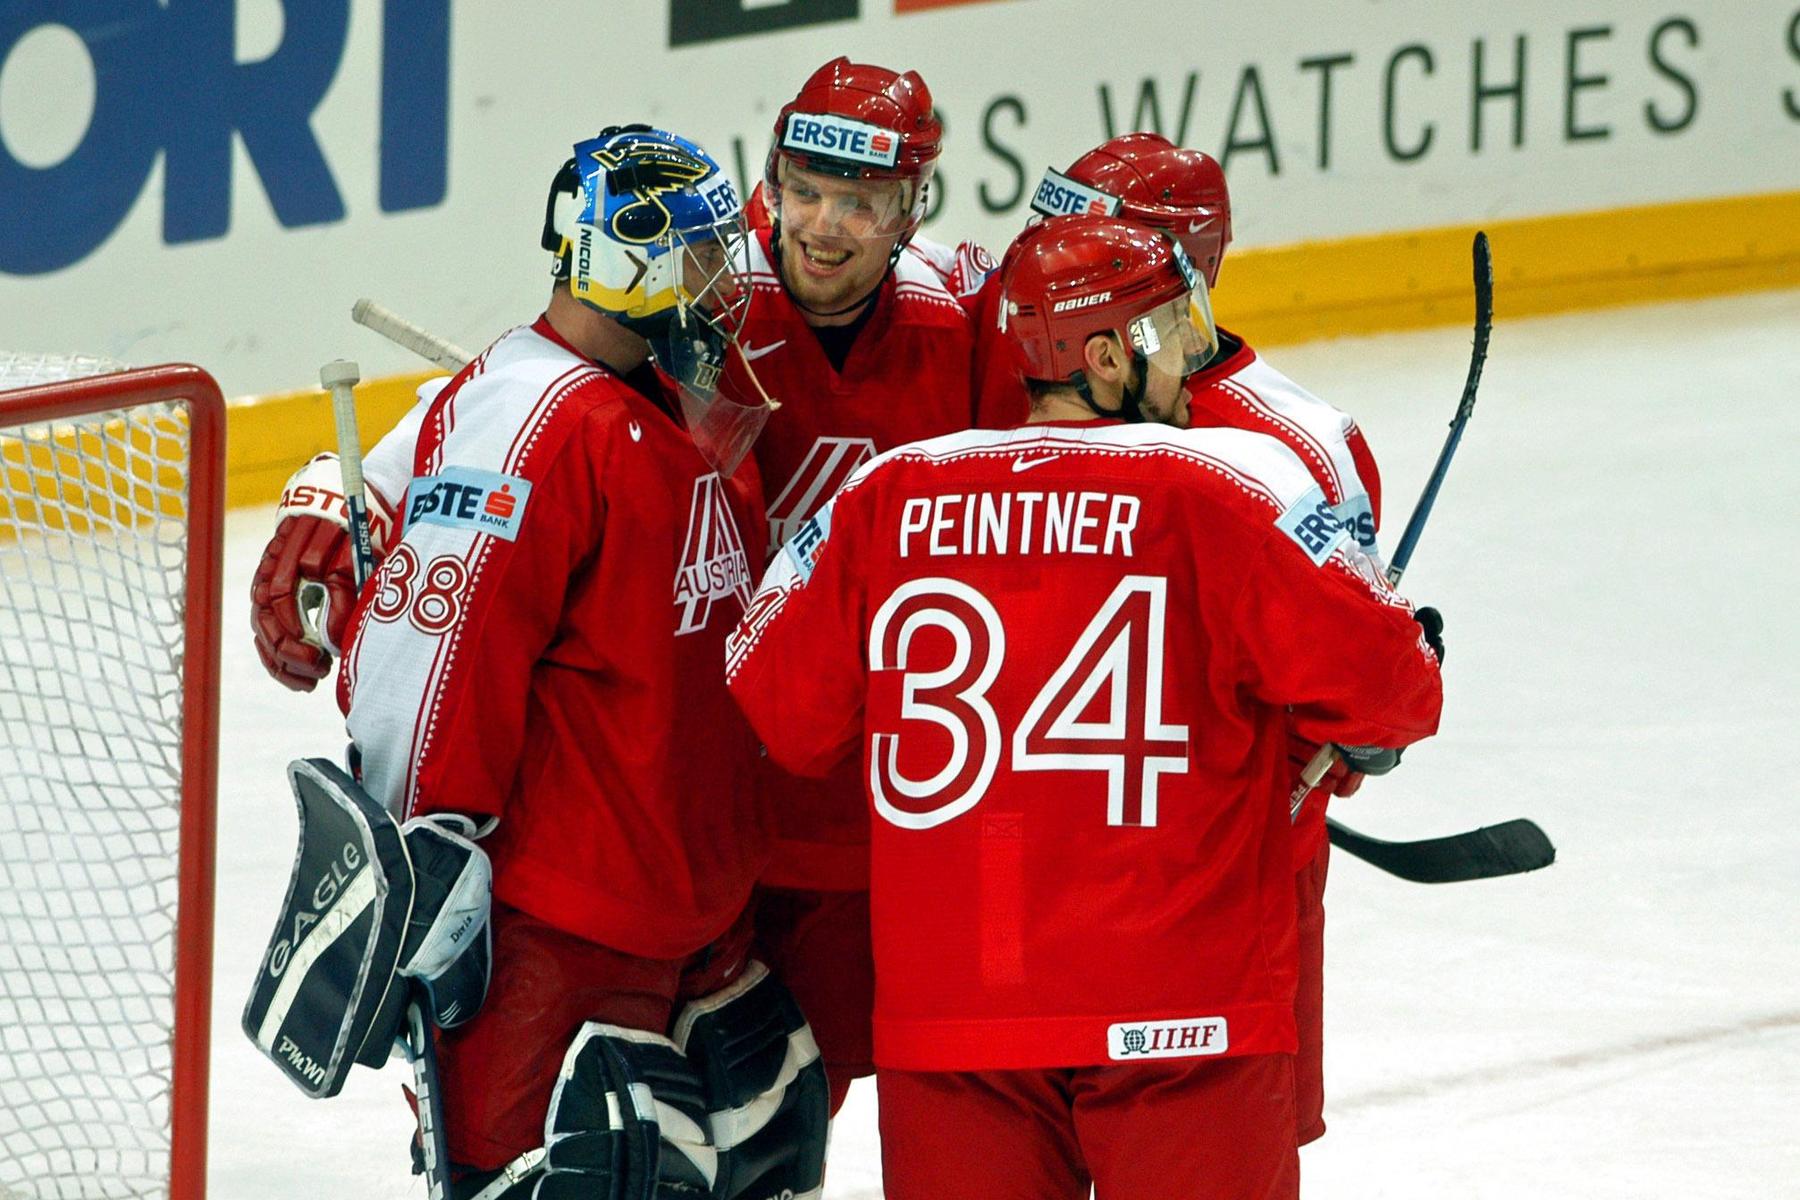 Eishockey-WM-Held von 2004: Thomas Pöck: „Österreicher haben wie Kanadier gespielt“